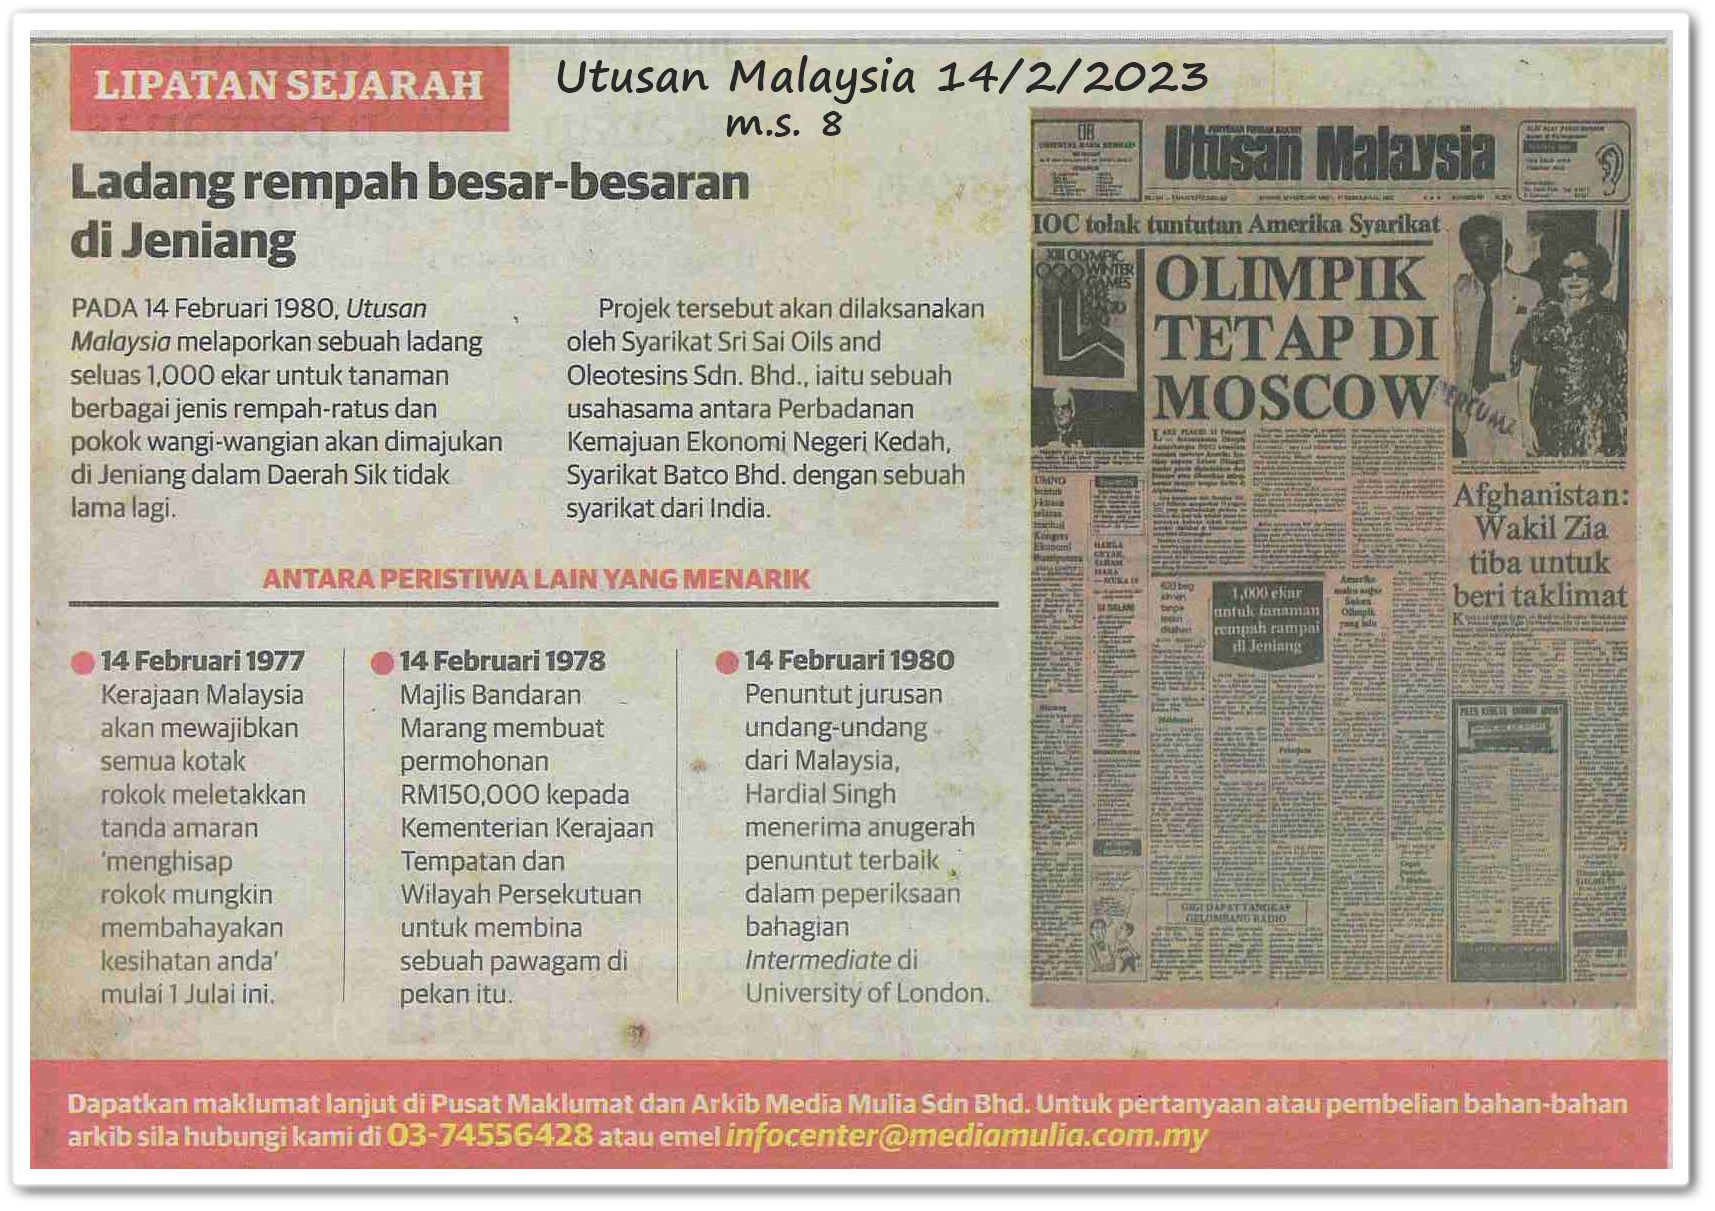 Lipatan sejarah 14 Februari - Keratan akhbar Utusan Malaysia 14 Februari 2023